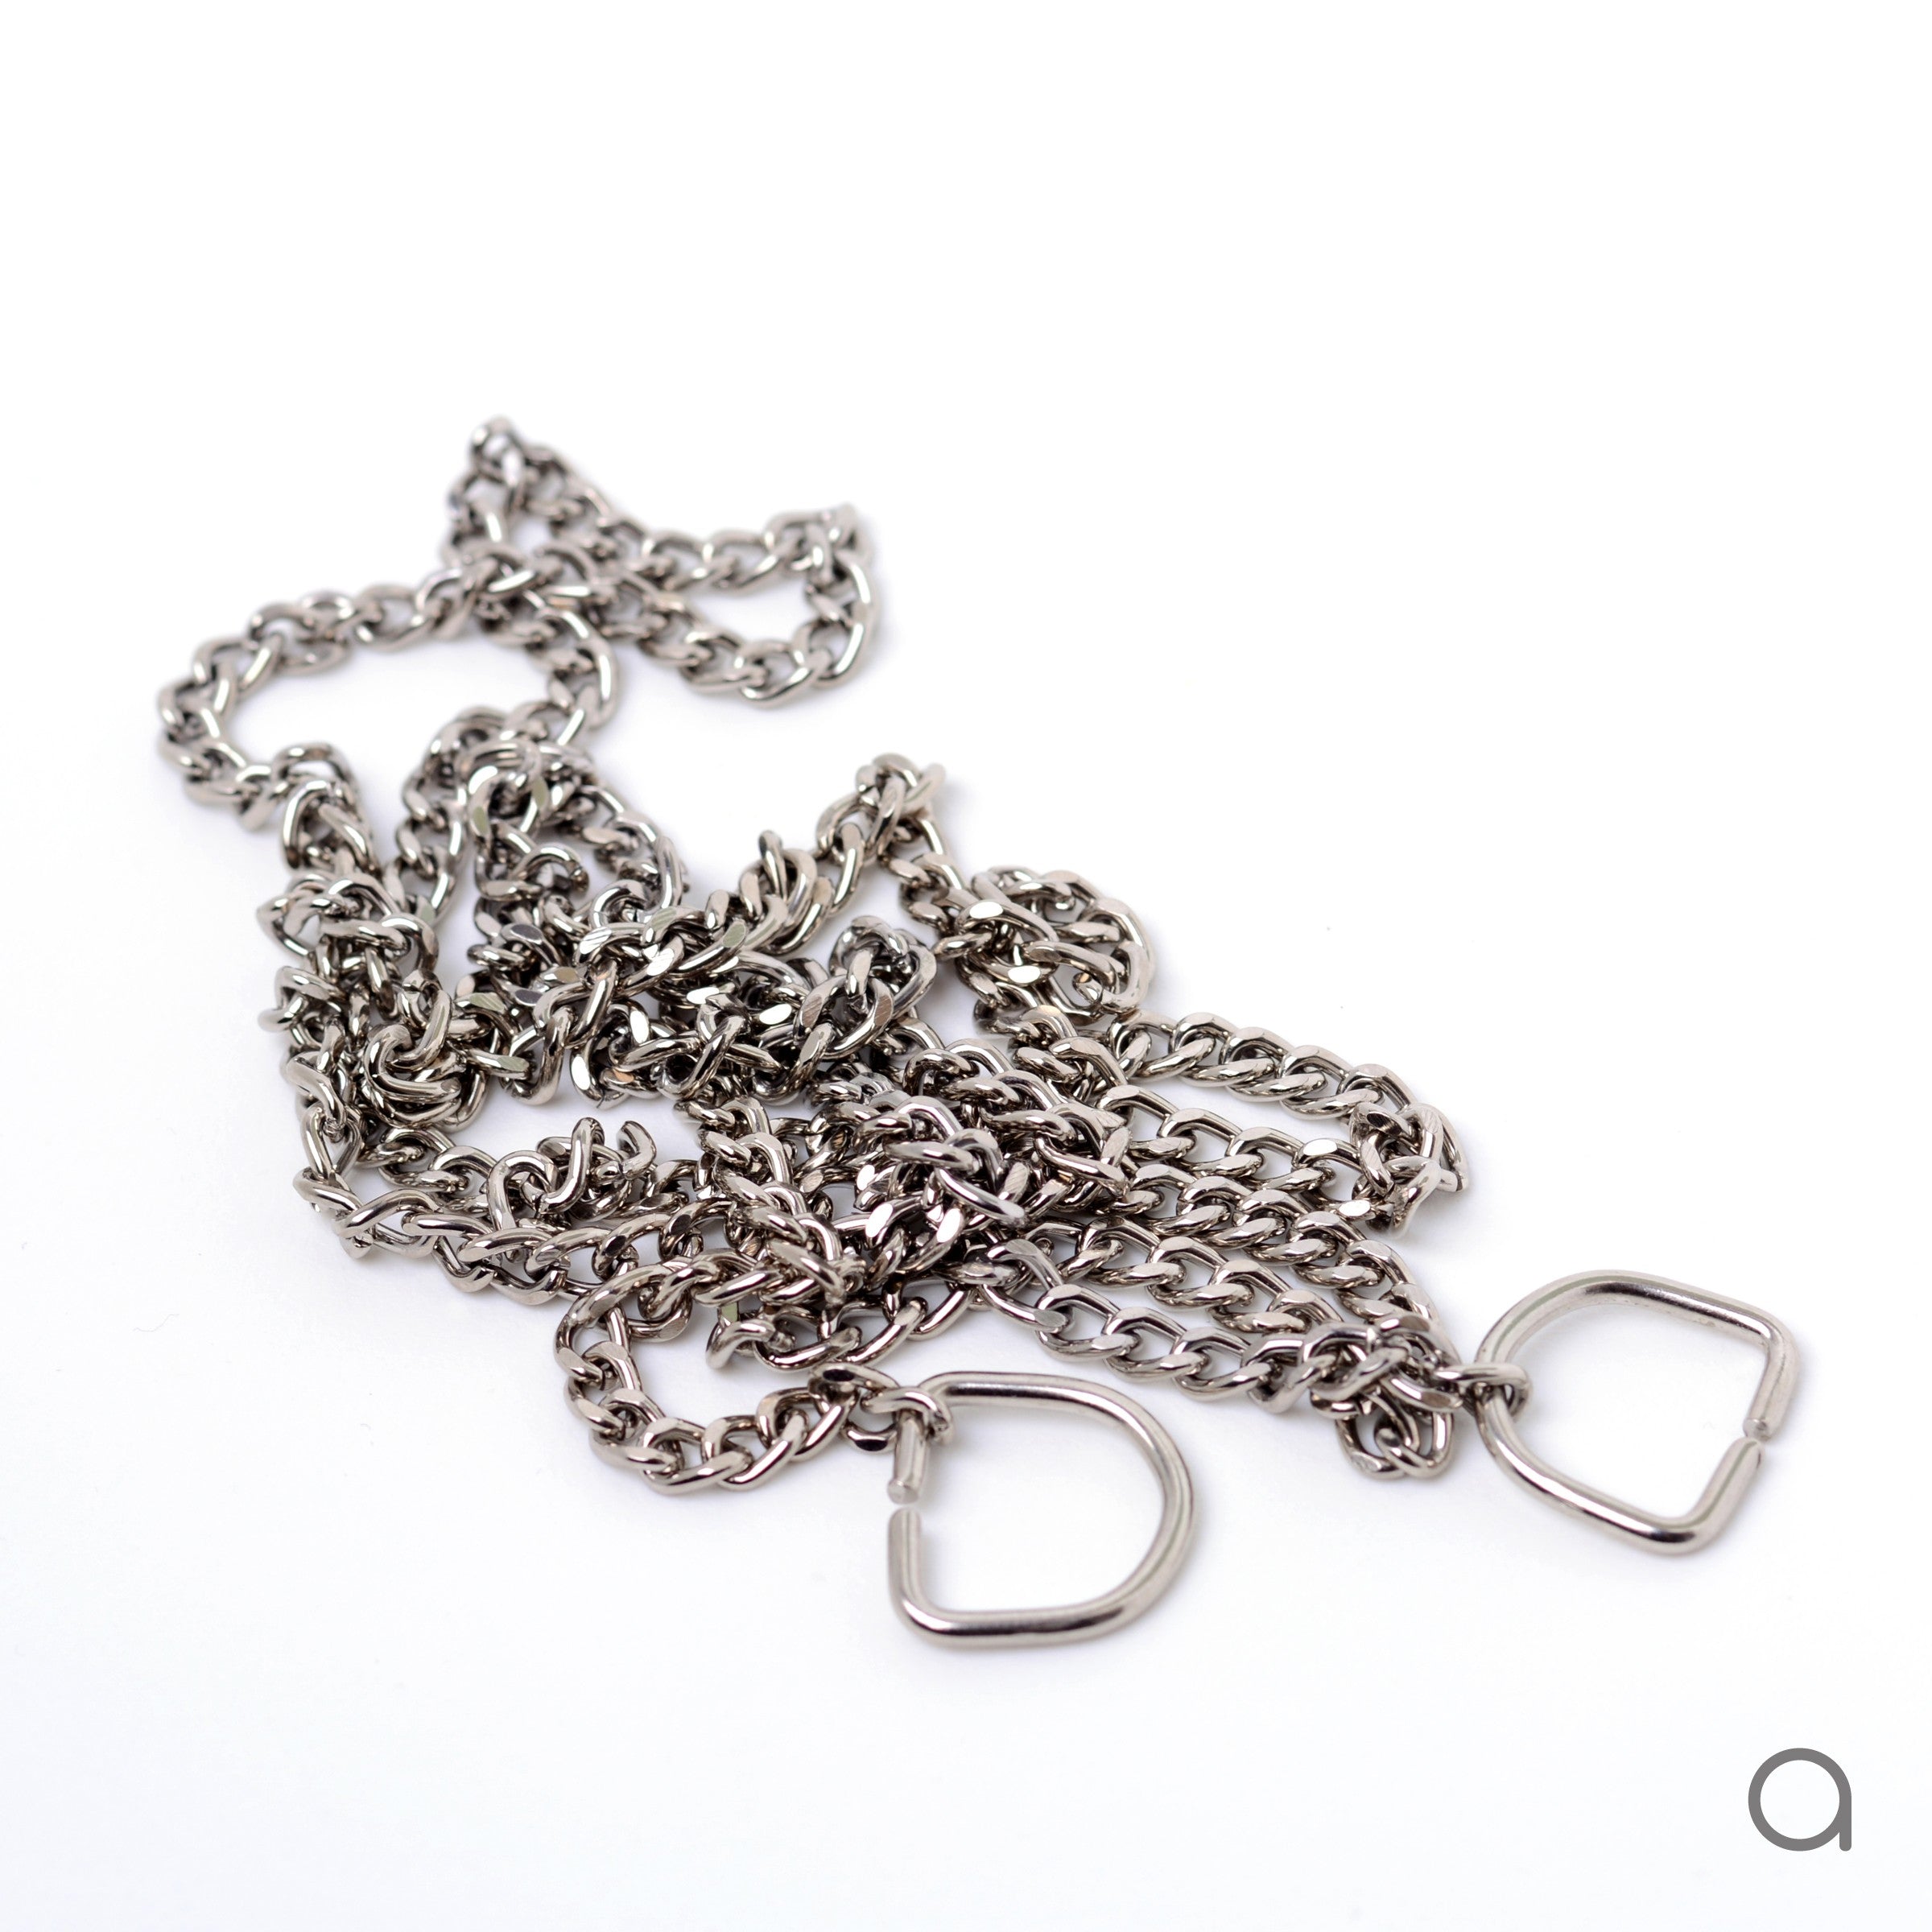 Fixed silver color chain - 110 cm